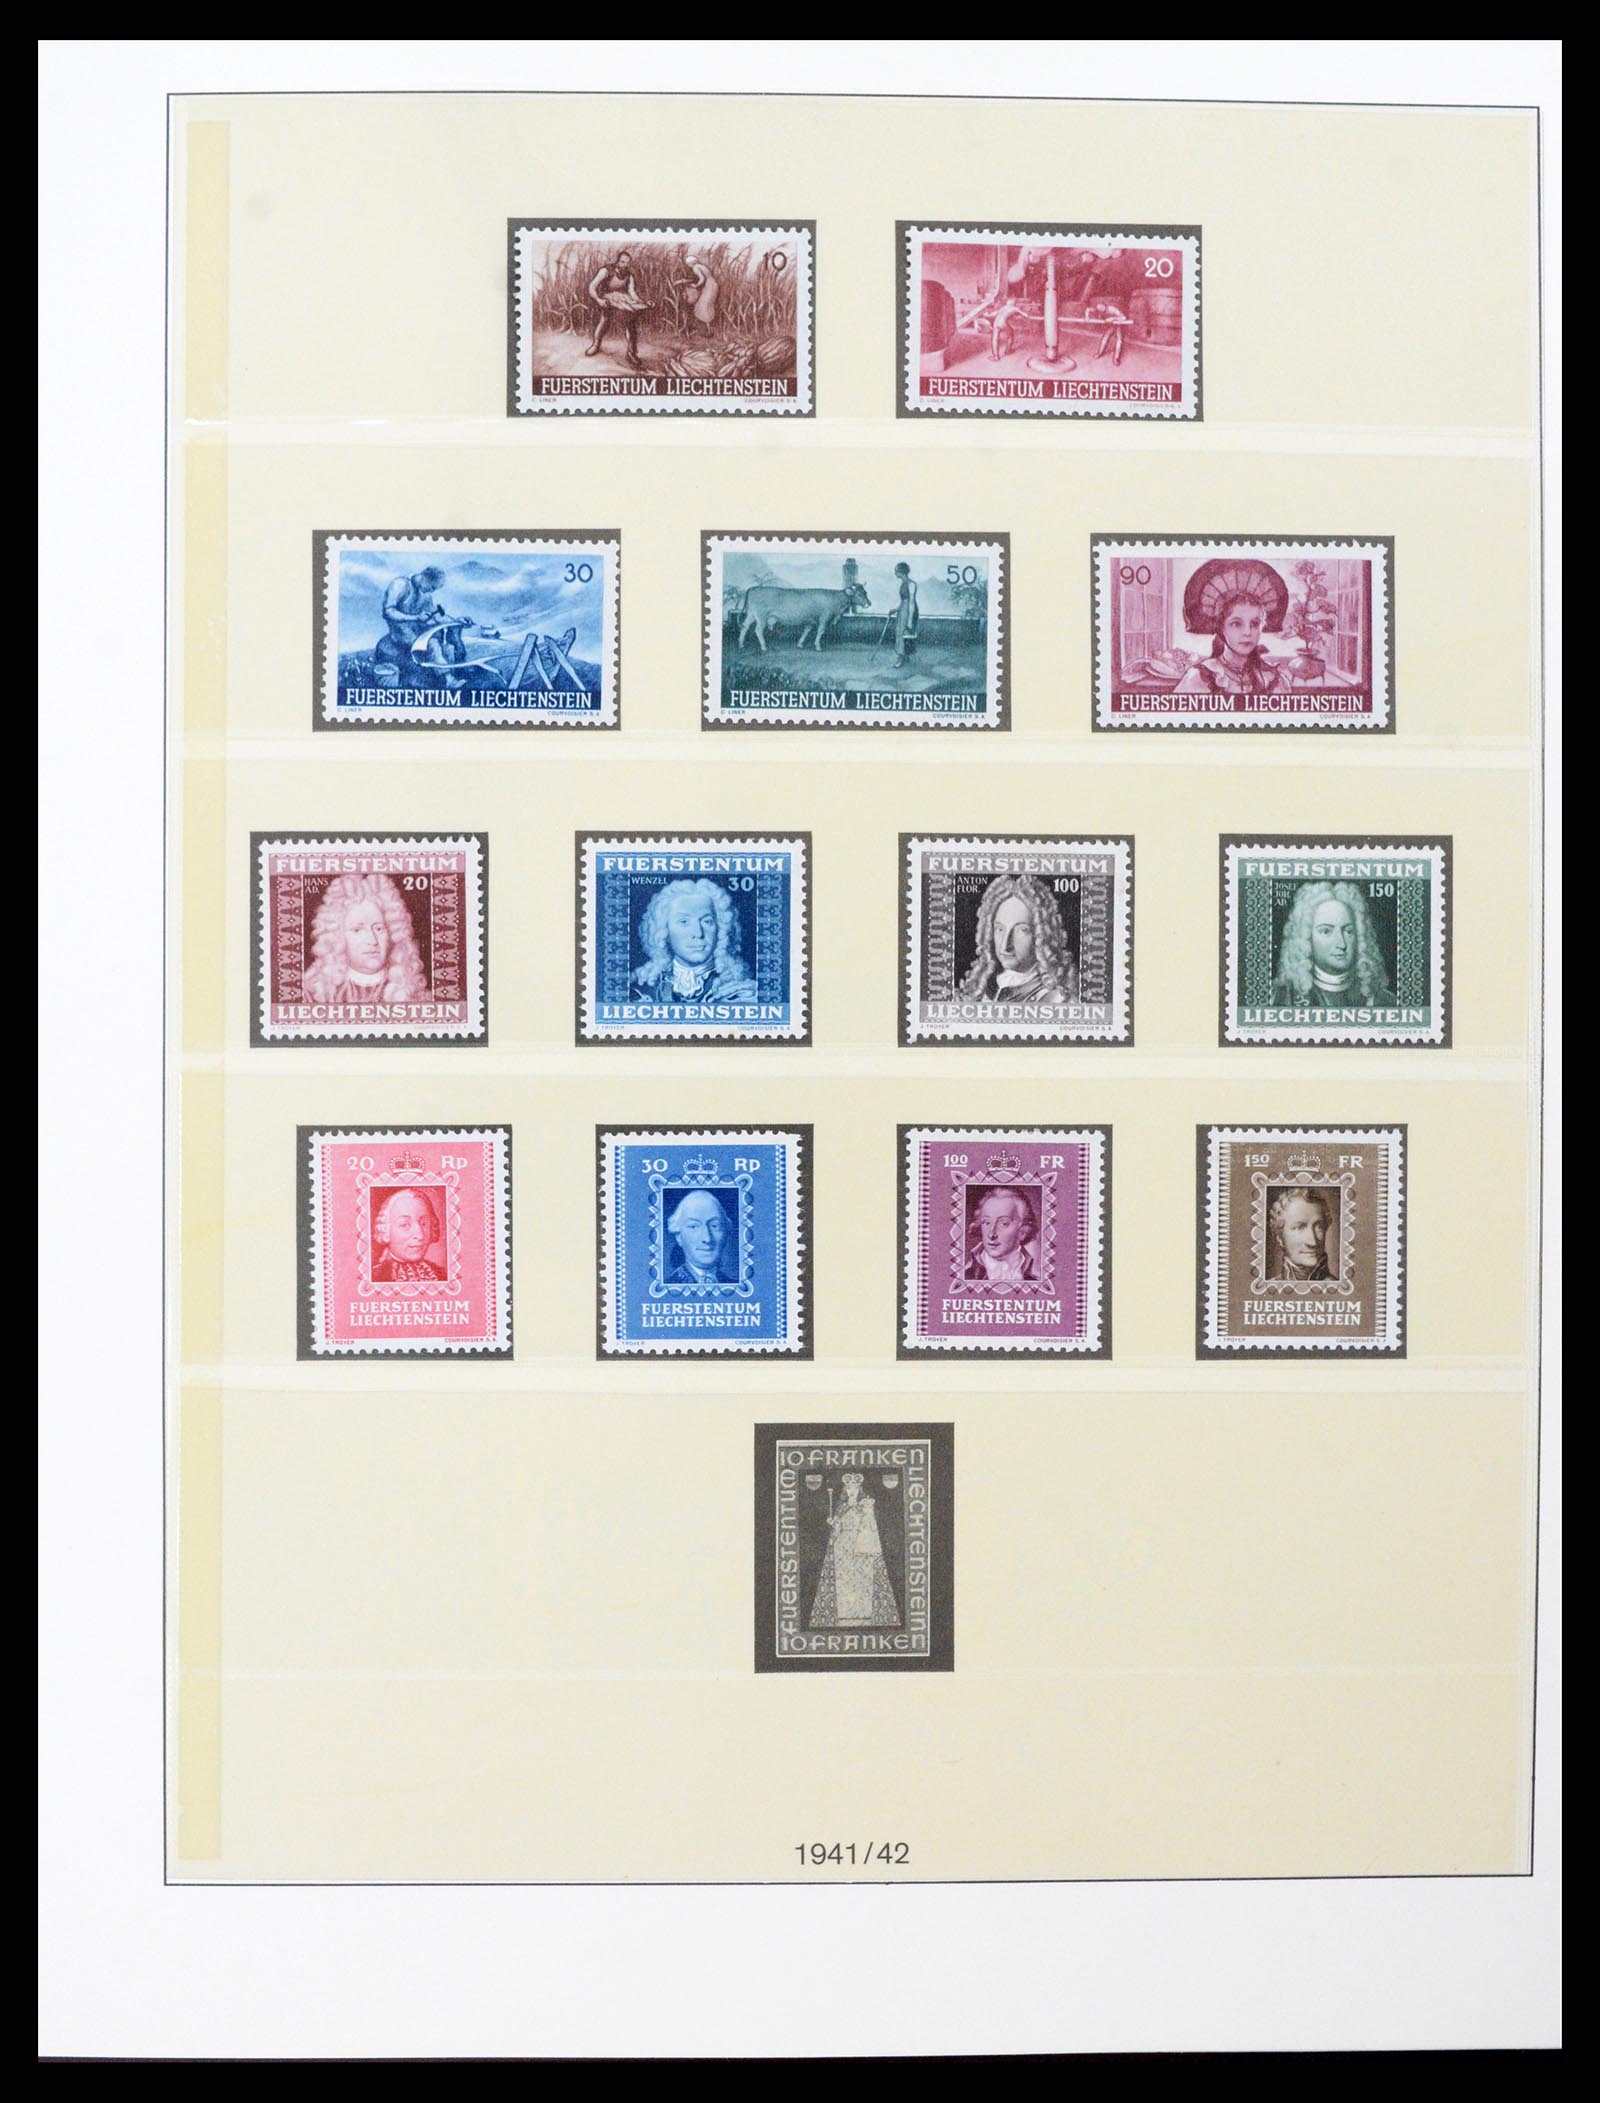 37293 015 - Stamp collection 37293 Liechtenstein 1912-2003.